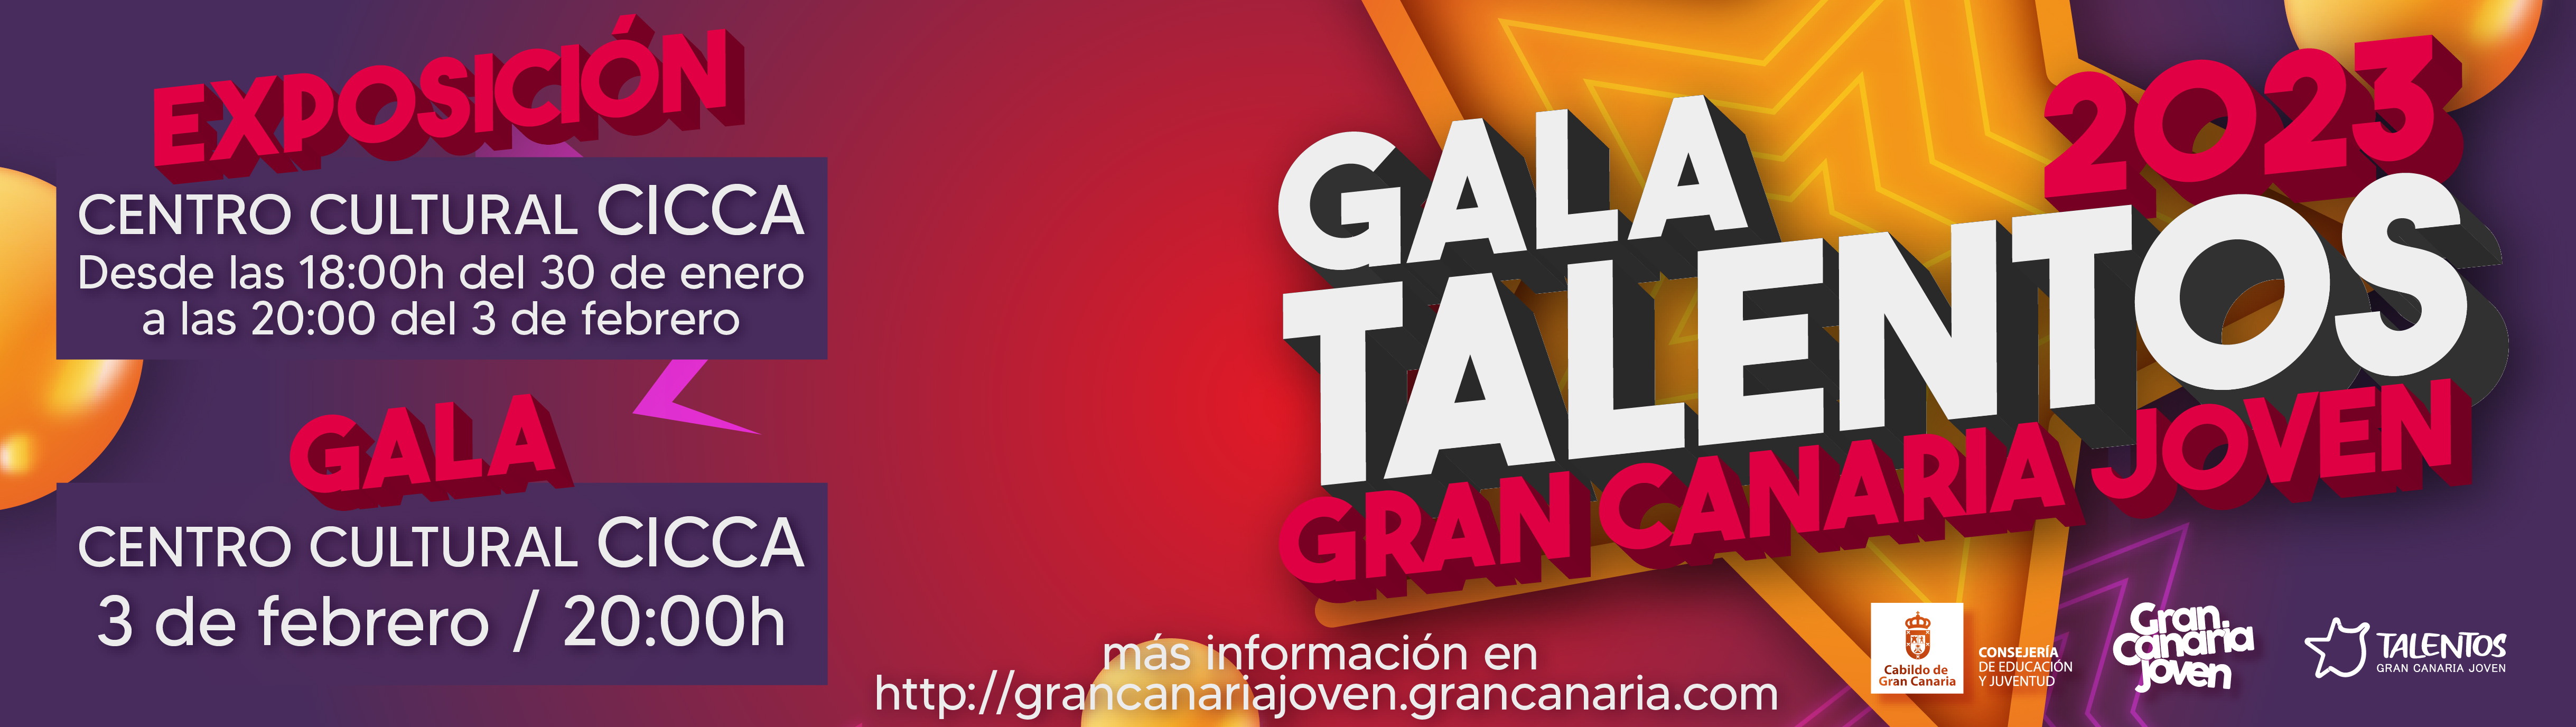 Gala Talentos Gran Canaria Joven